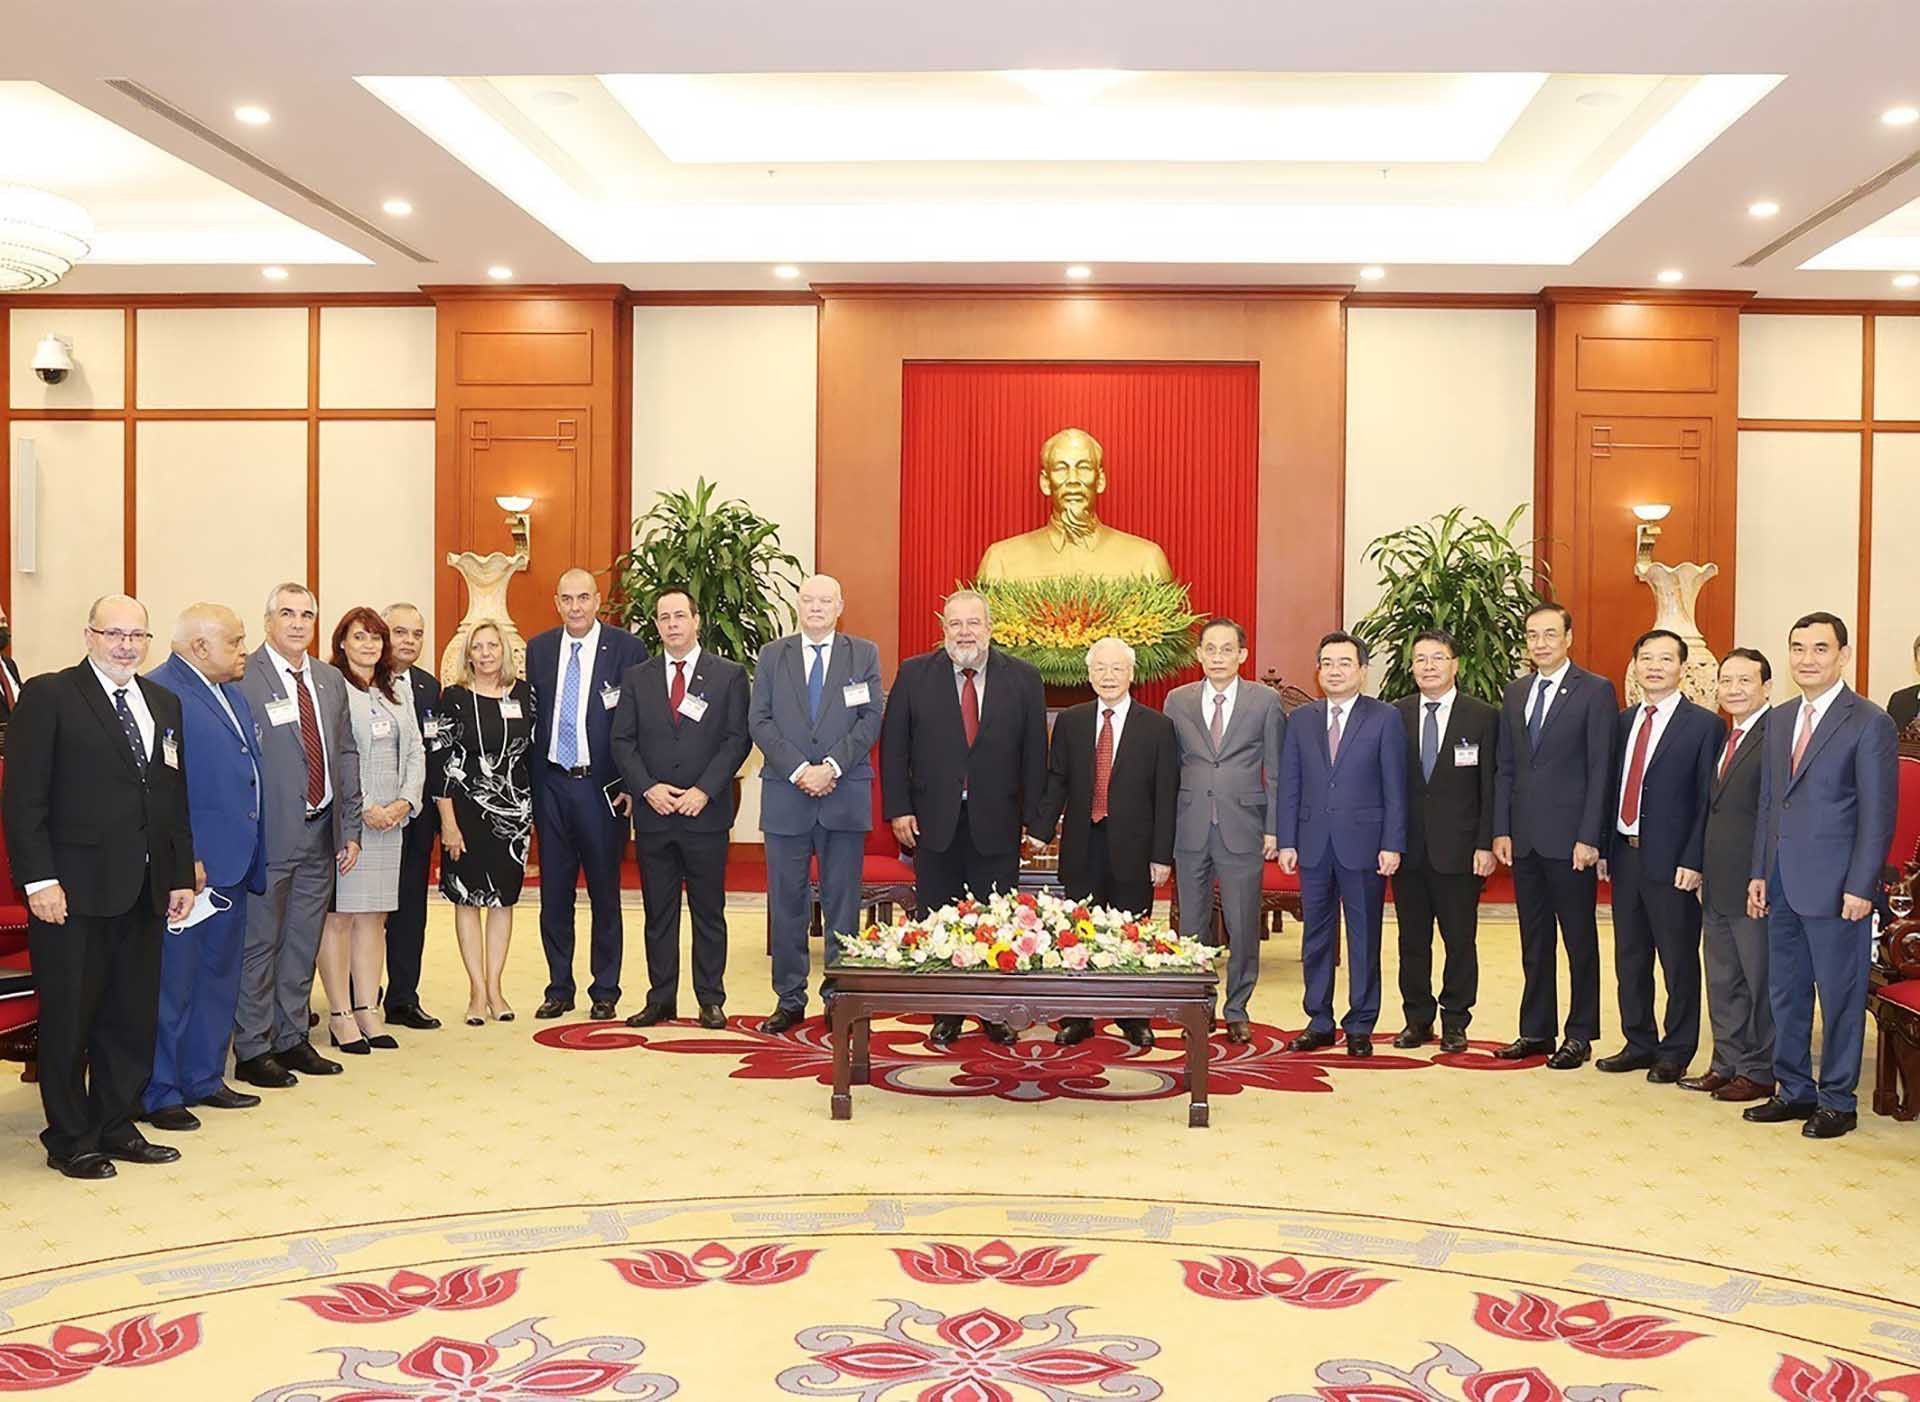 Tổng Bí thư Nguyễn Phú Trọng và Thủ tướng Cuba Manuel Marrero Cruz chụp ảnh chung với các đại biểu. (Nguồn: TTXVN)